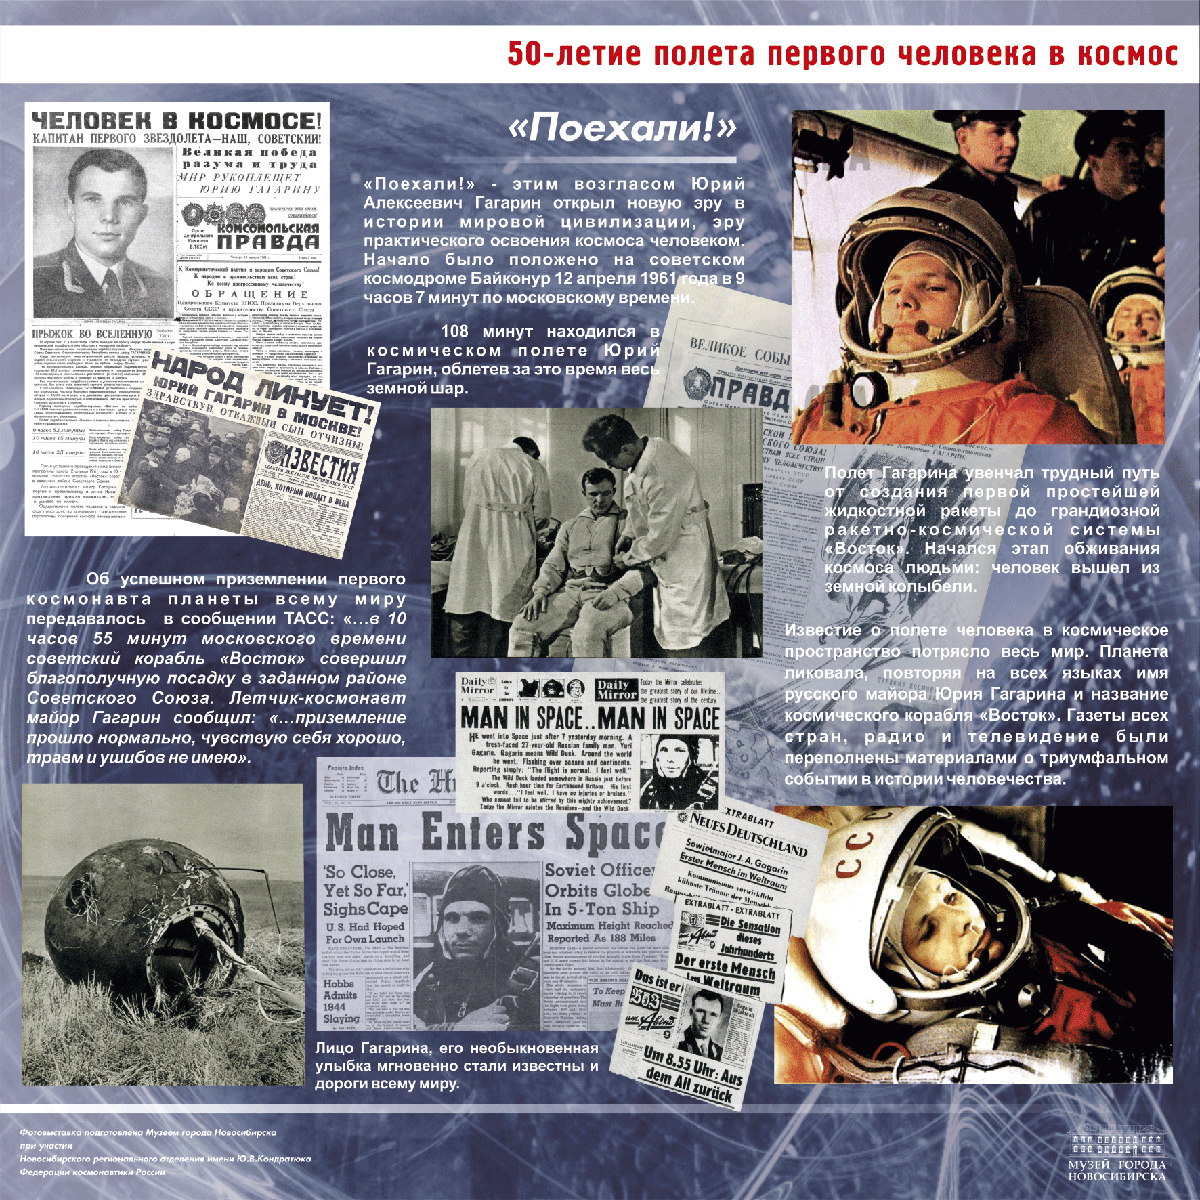 Сообщение о первом полете в космос. 1961 Первый полет человека в космос. Полет Гагарина в космос 12 апреля 1961. 60 Летие полета Гагарина в космос.